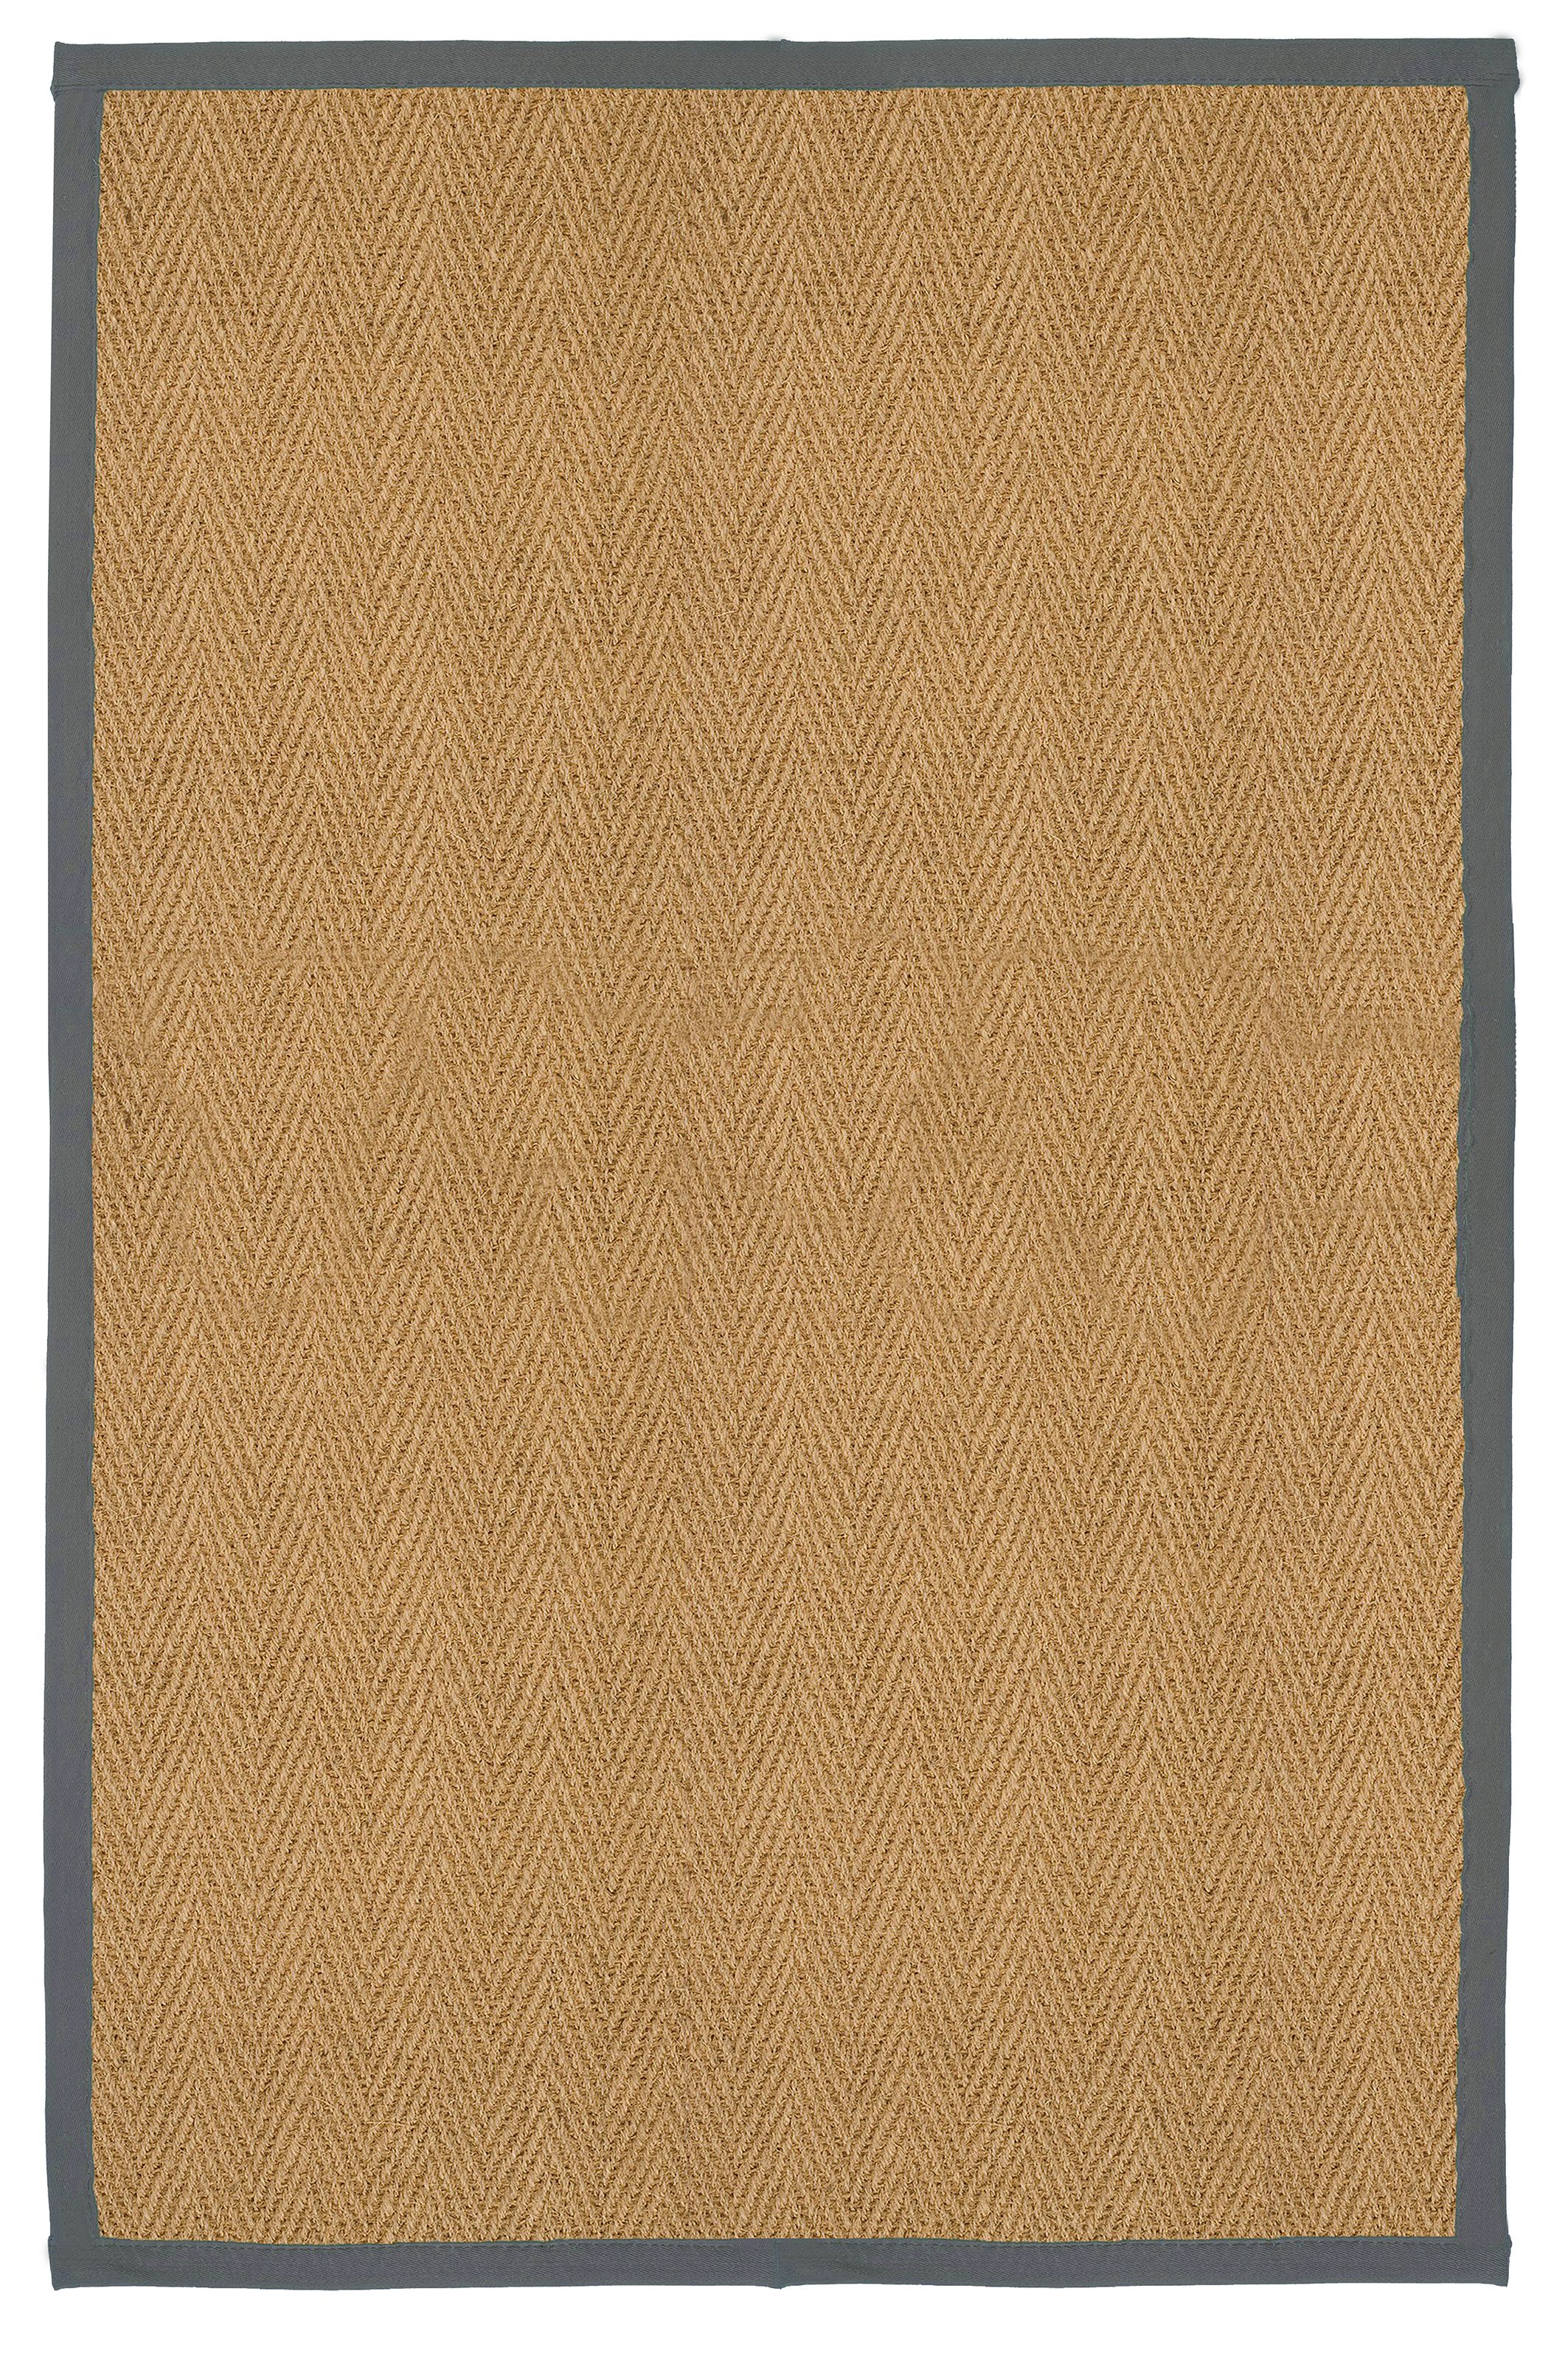 Brown, grey Herringbone weave Rug 200cmx135cm